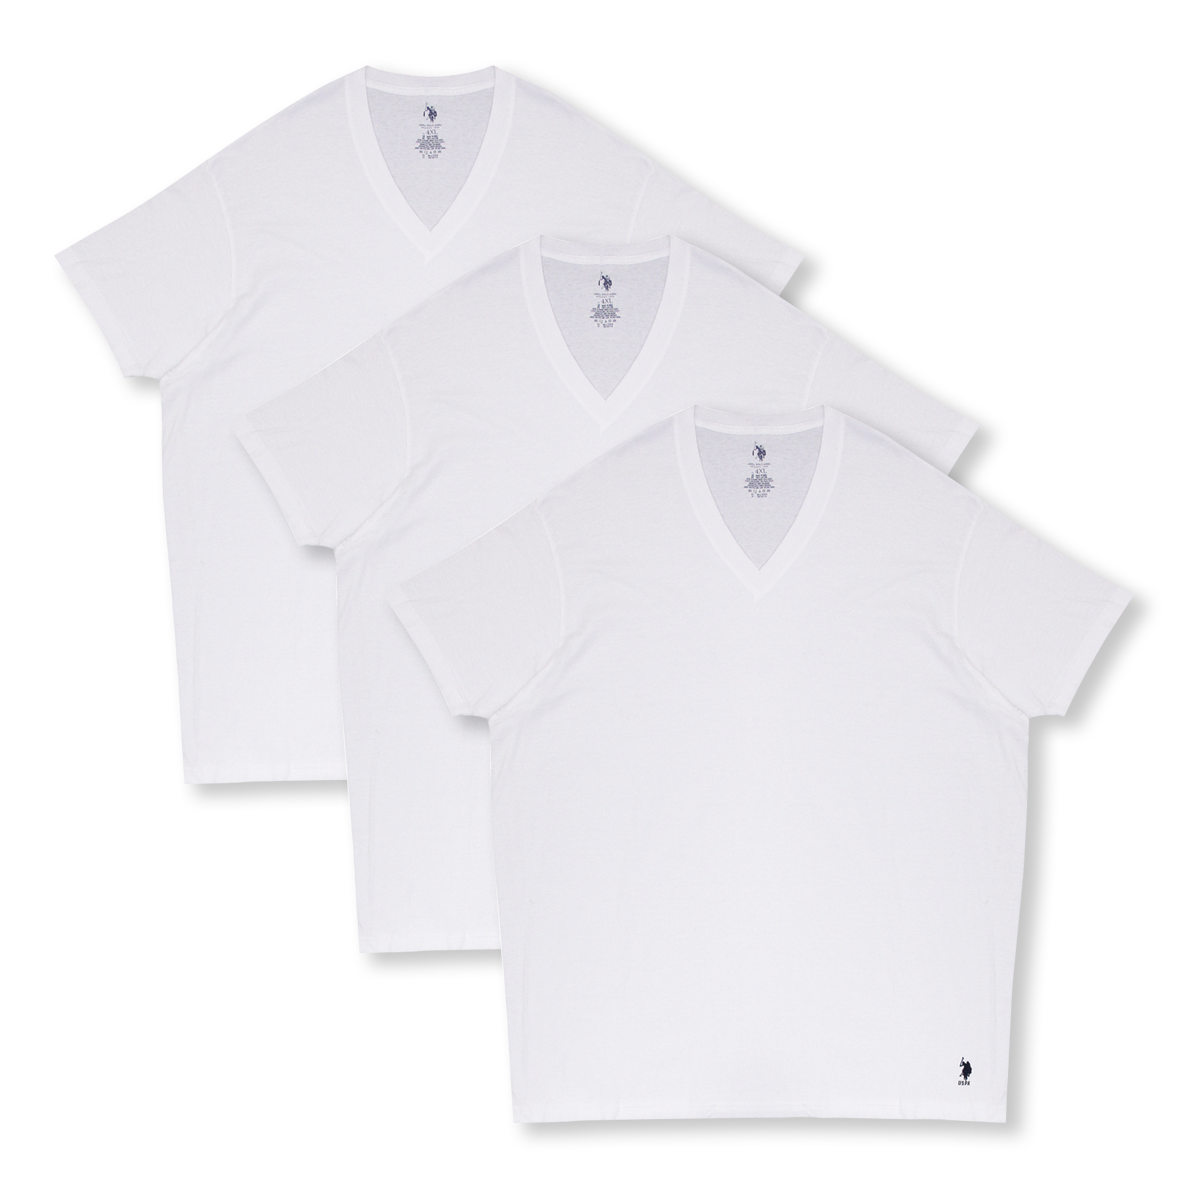 U.S Polo Assn. Men's White 3 Pack Tall V-Neck S/S T-Shirt (S01)